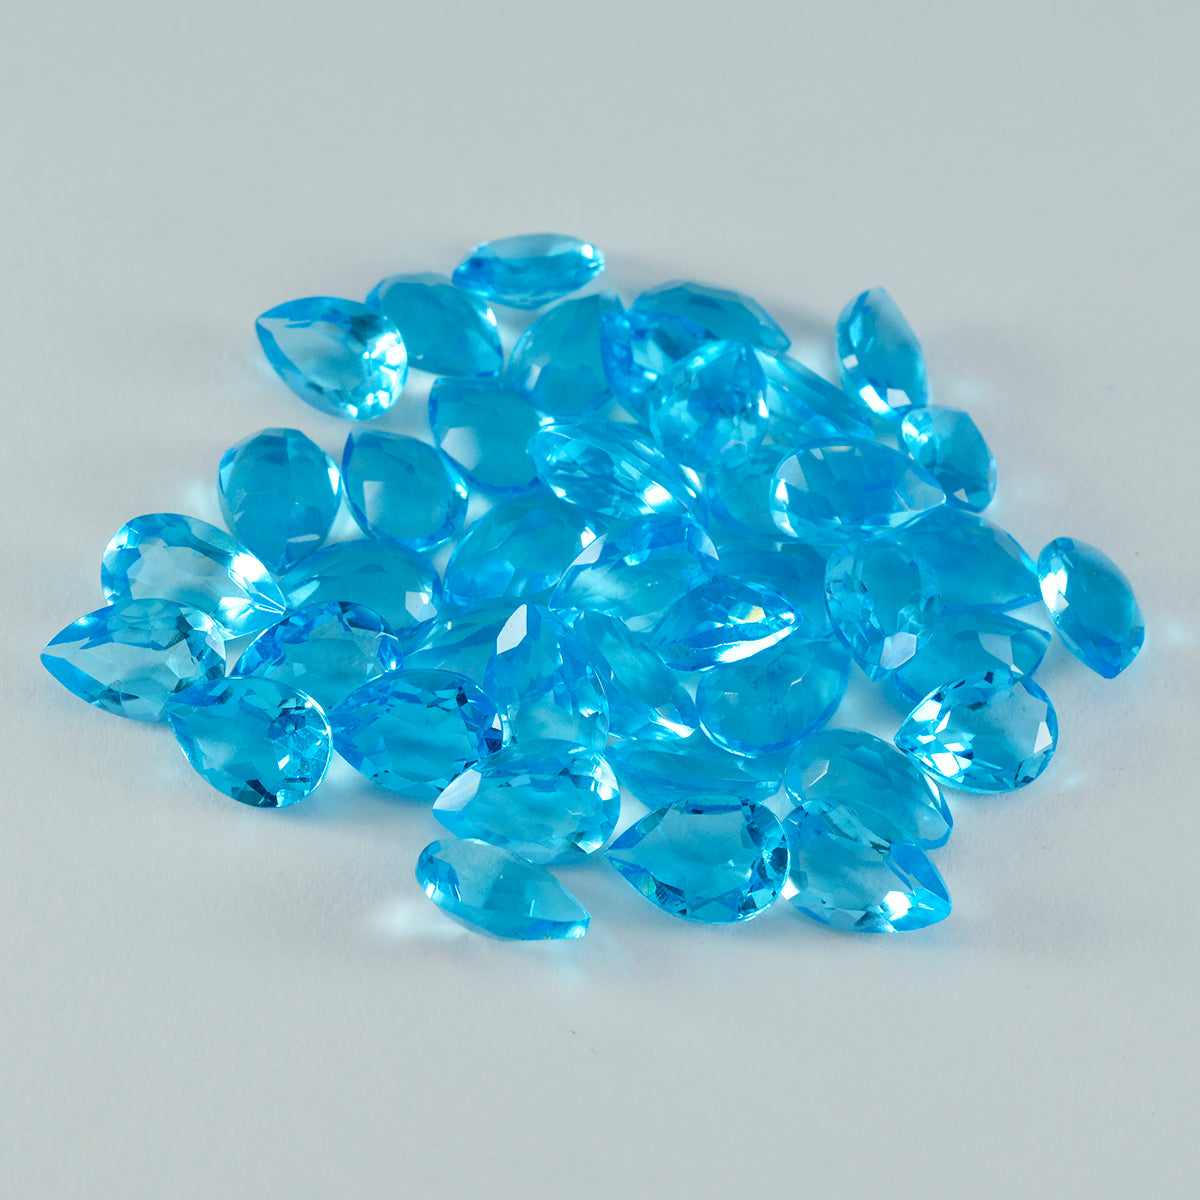 Riyogems 1 pieza Topacio azul CZ facetado 6x9 mm forma de pera preciosa calidad gema suelta